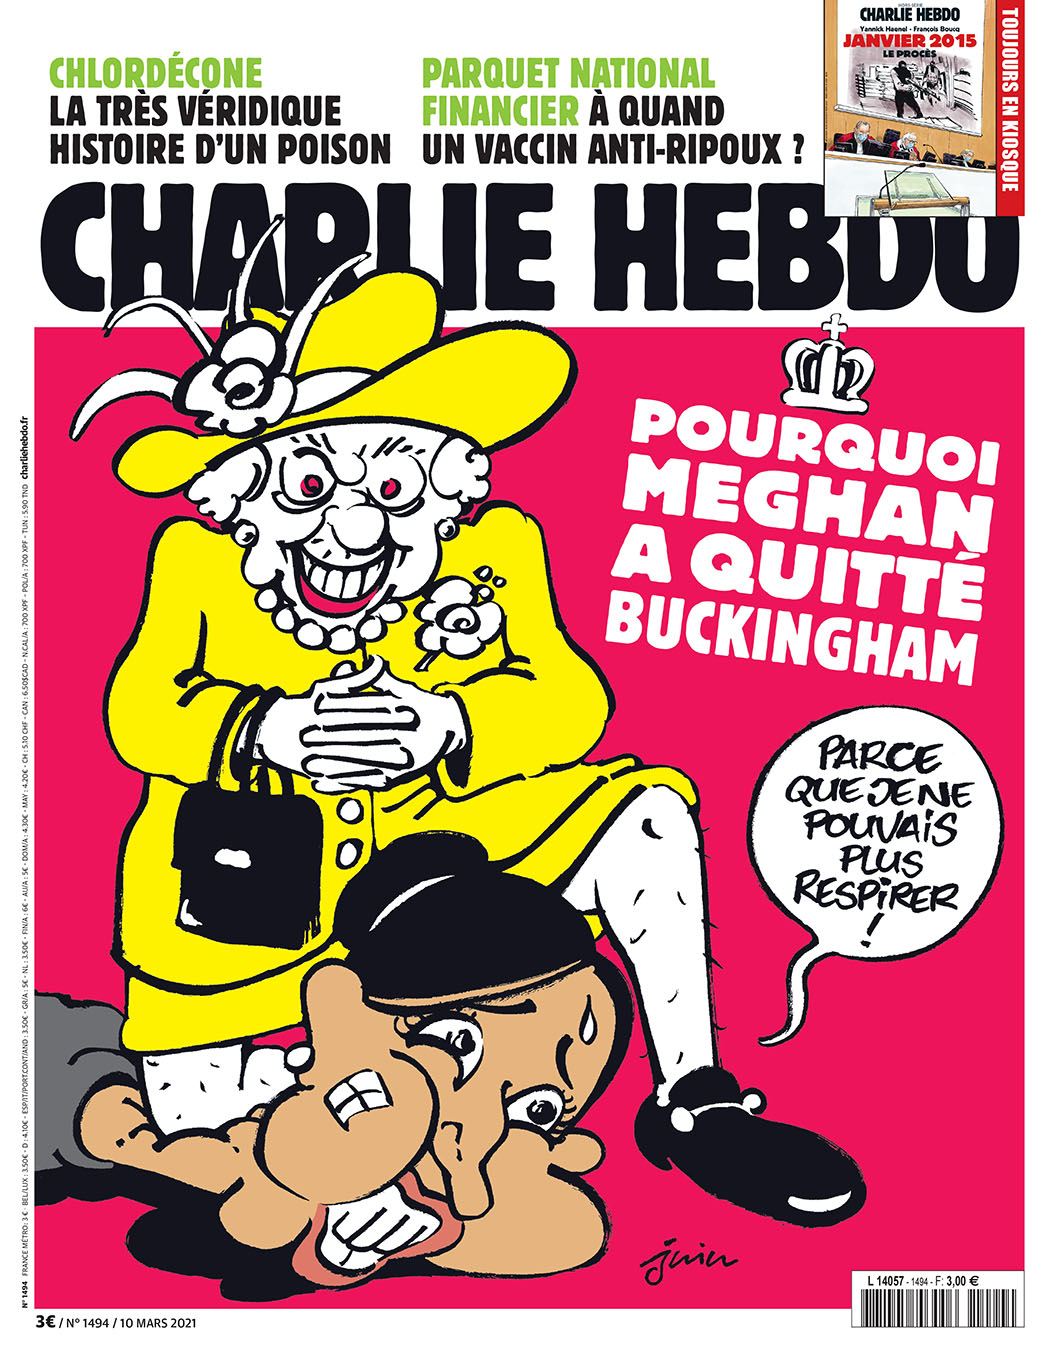 Журнал Charlie Hebdo высмеял раскол в королевской семье карикатурой на Меган Маркл и Елизавету. ФОТО